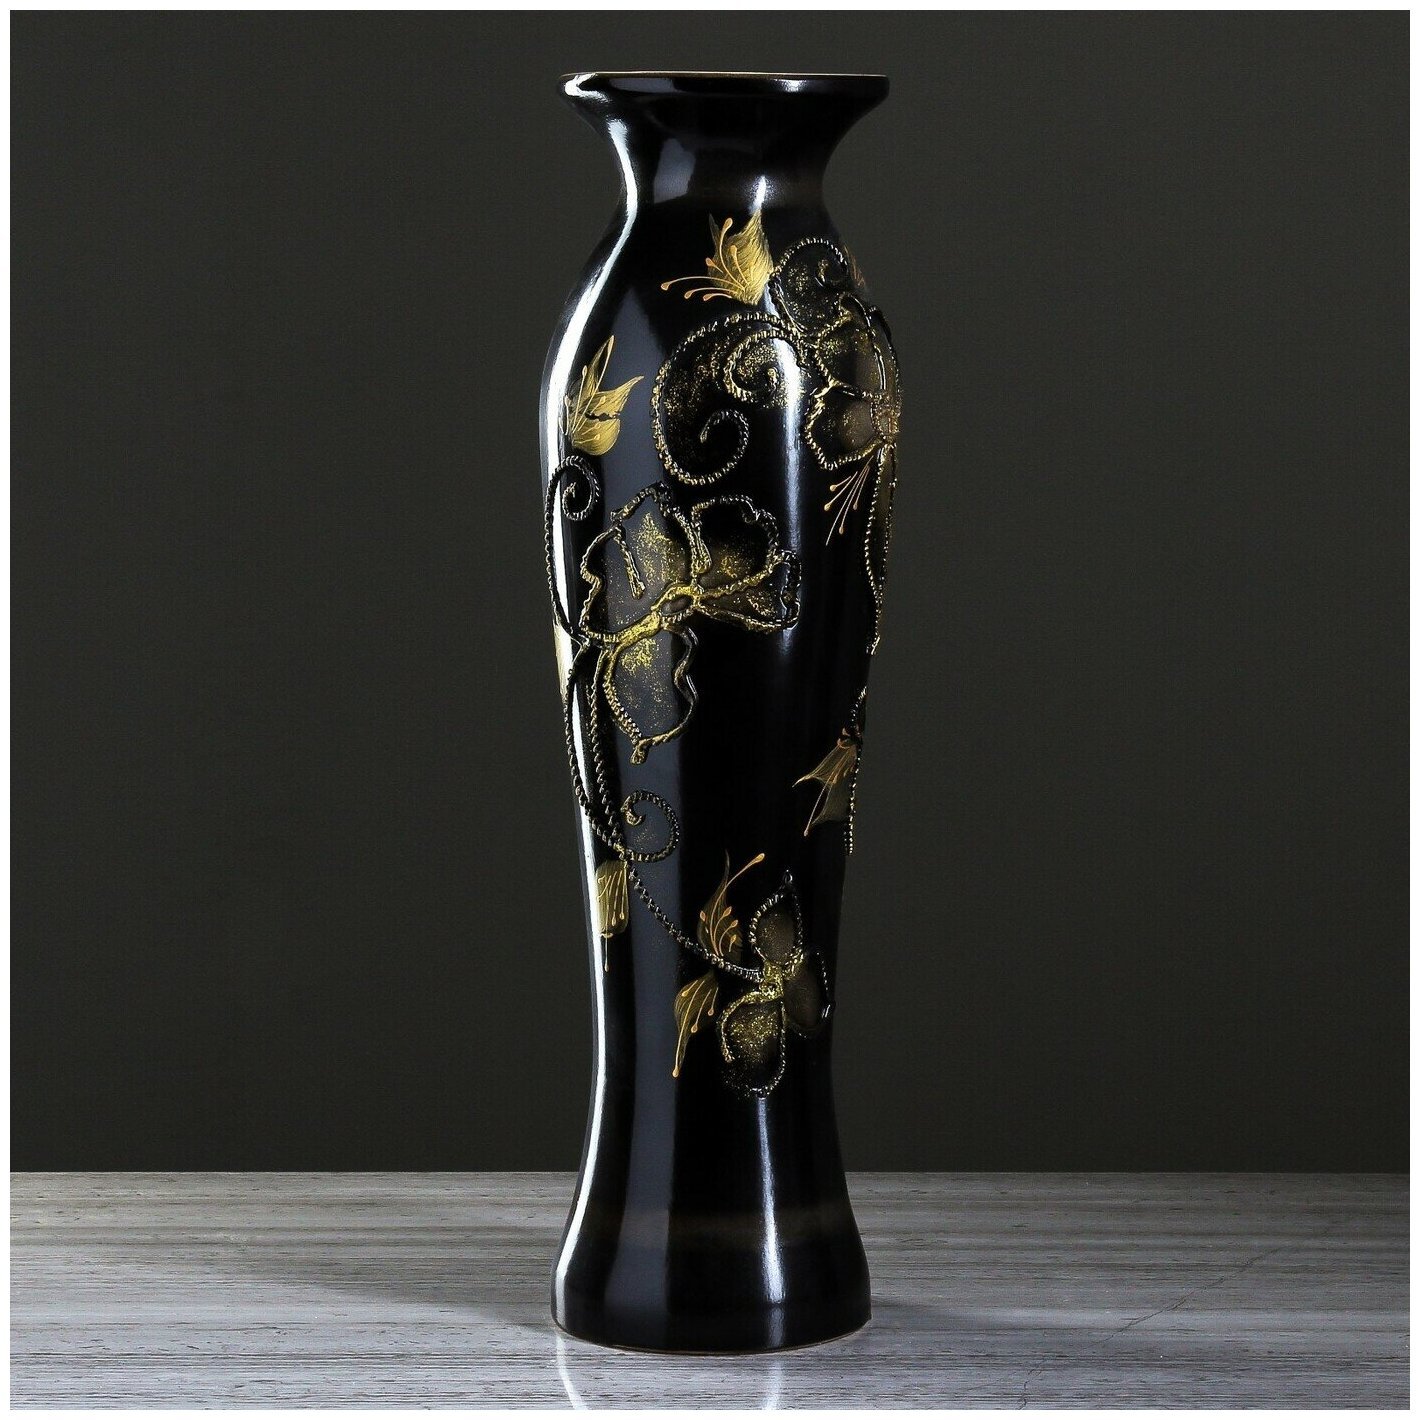 Керамическая ваза напольная купить. Ваза напольная керамика 70см Кристалл черная. 370322 Ваза Manuela, черный с золотым, керамика,. Ваза напольная 67см керамика "Кристалл" цвет тёмнокоричневый. Ваза напольная Morita Japan 60.